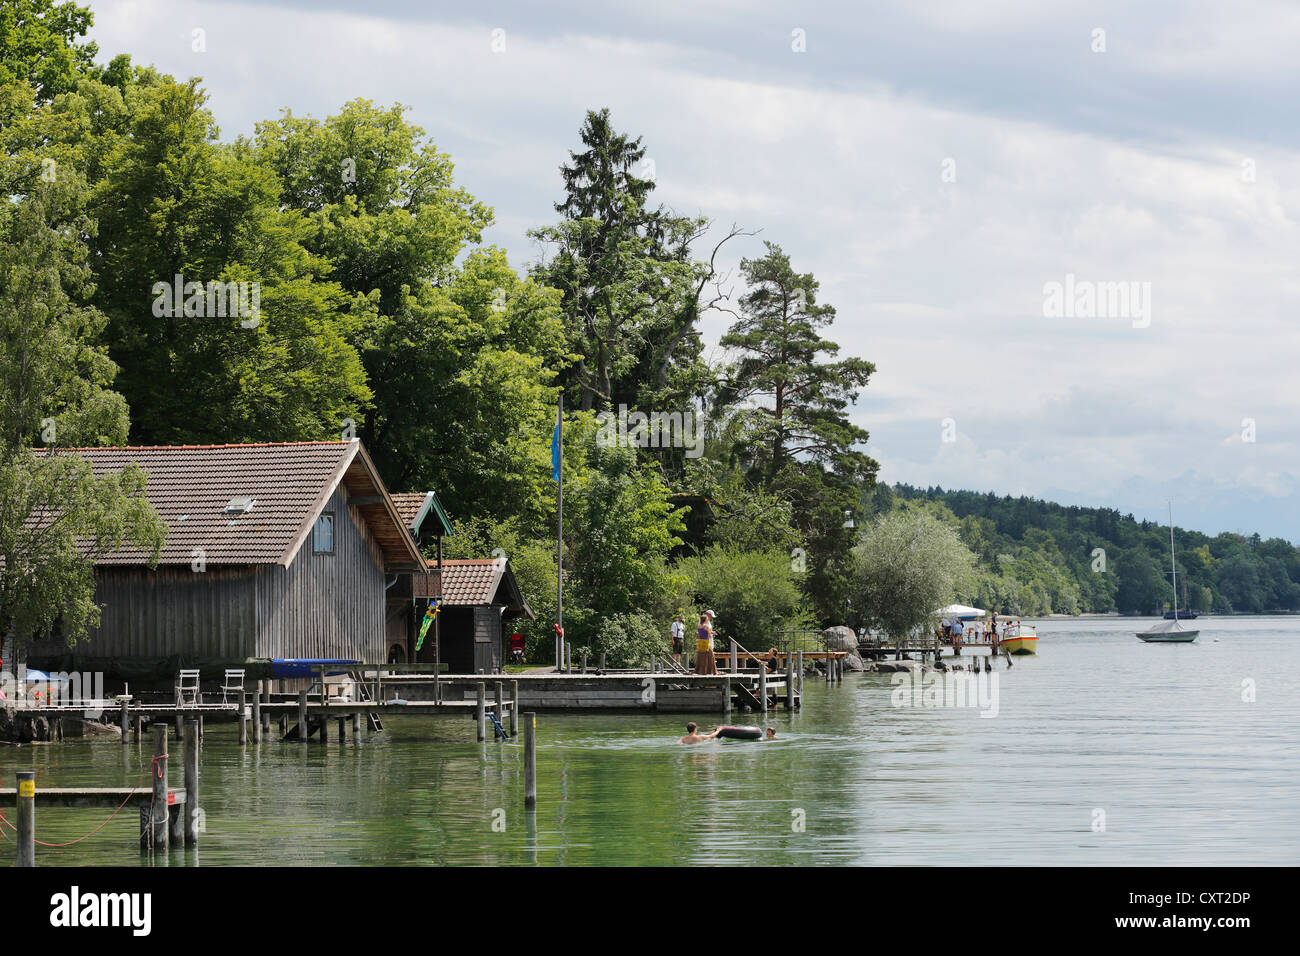 Le Lac de Starnberg dans Ammerland, communauté, Fuenfseenland Muensing, district de Haute-bavière, Bavaria, Germany, Europe Banque D'Images